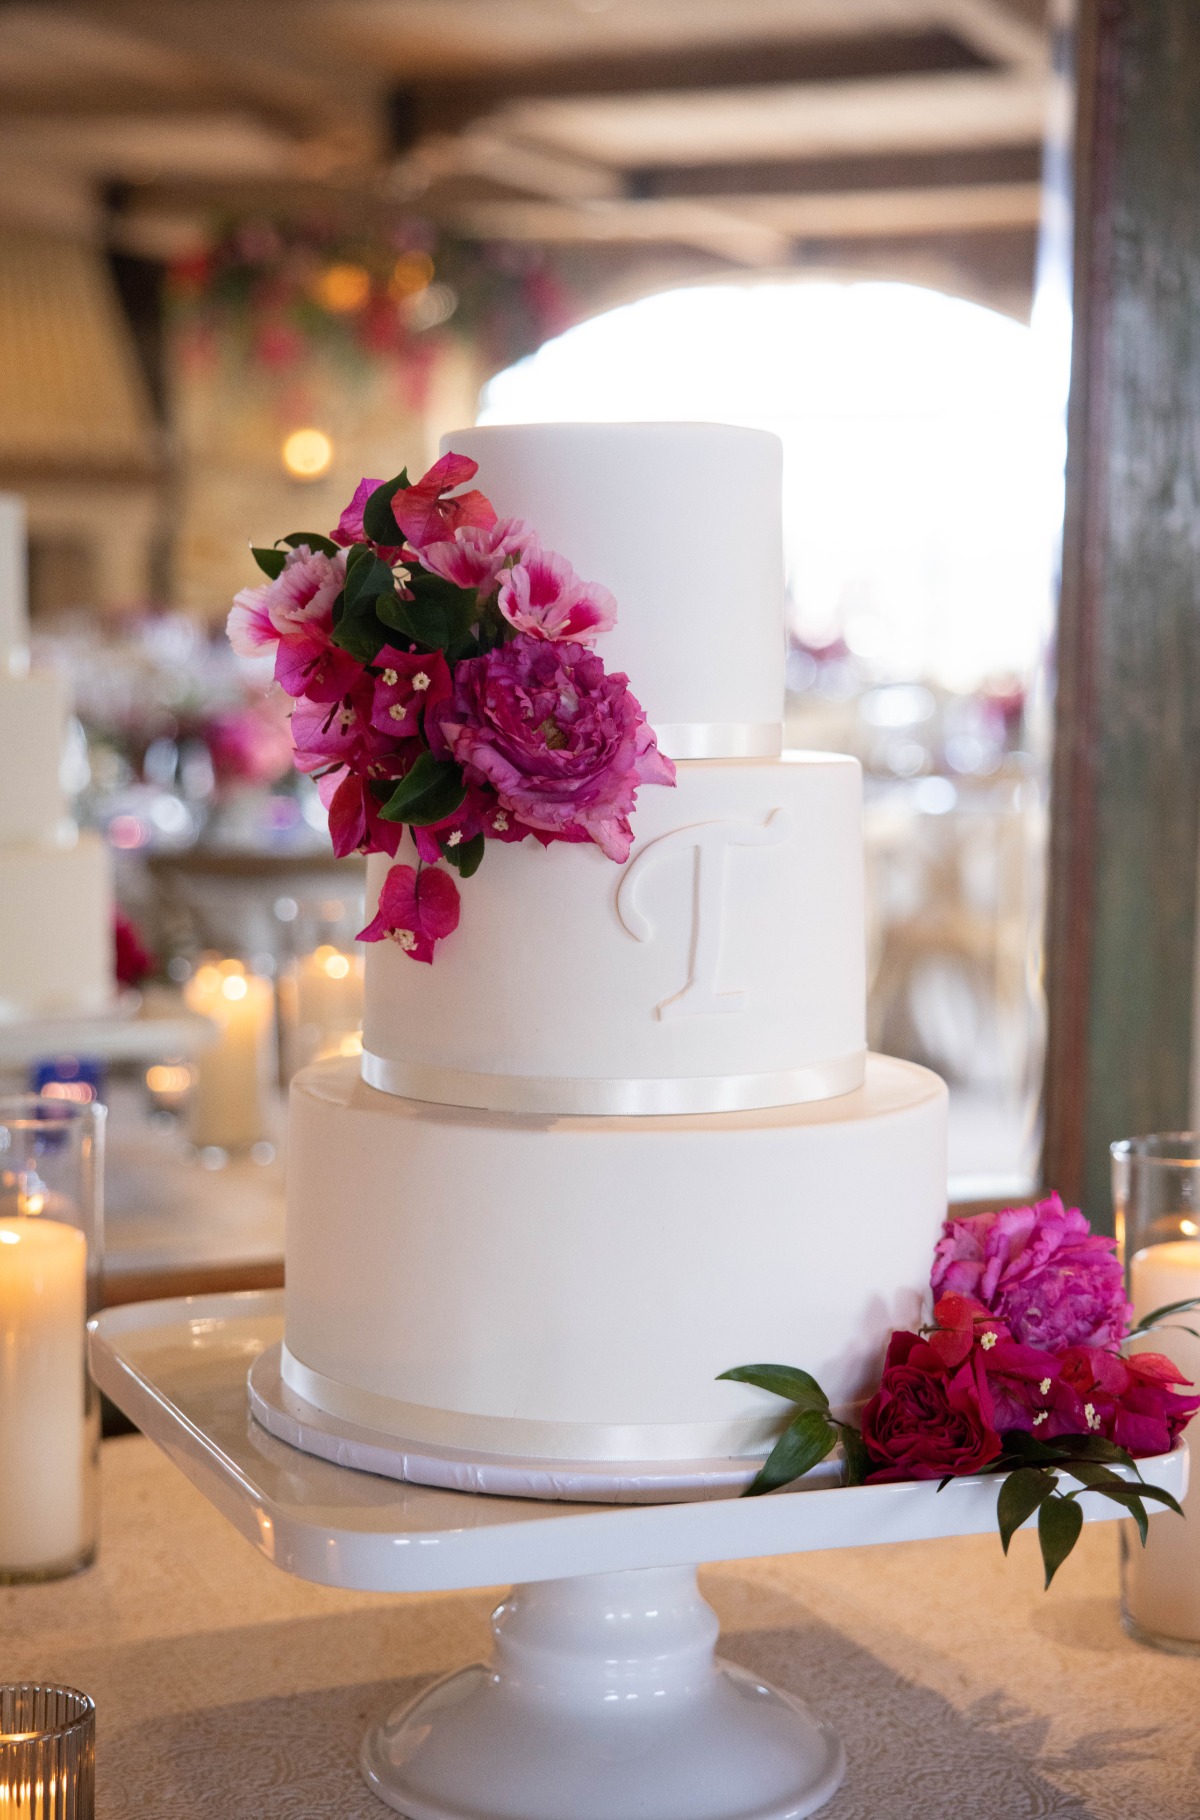 Elegant monogramed wedding cake